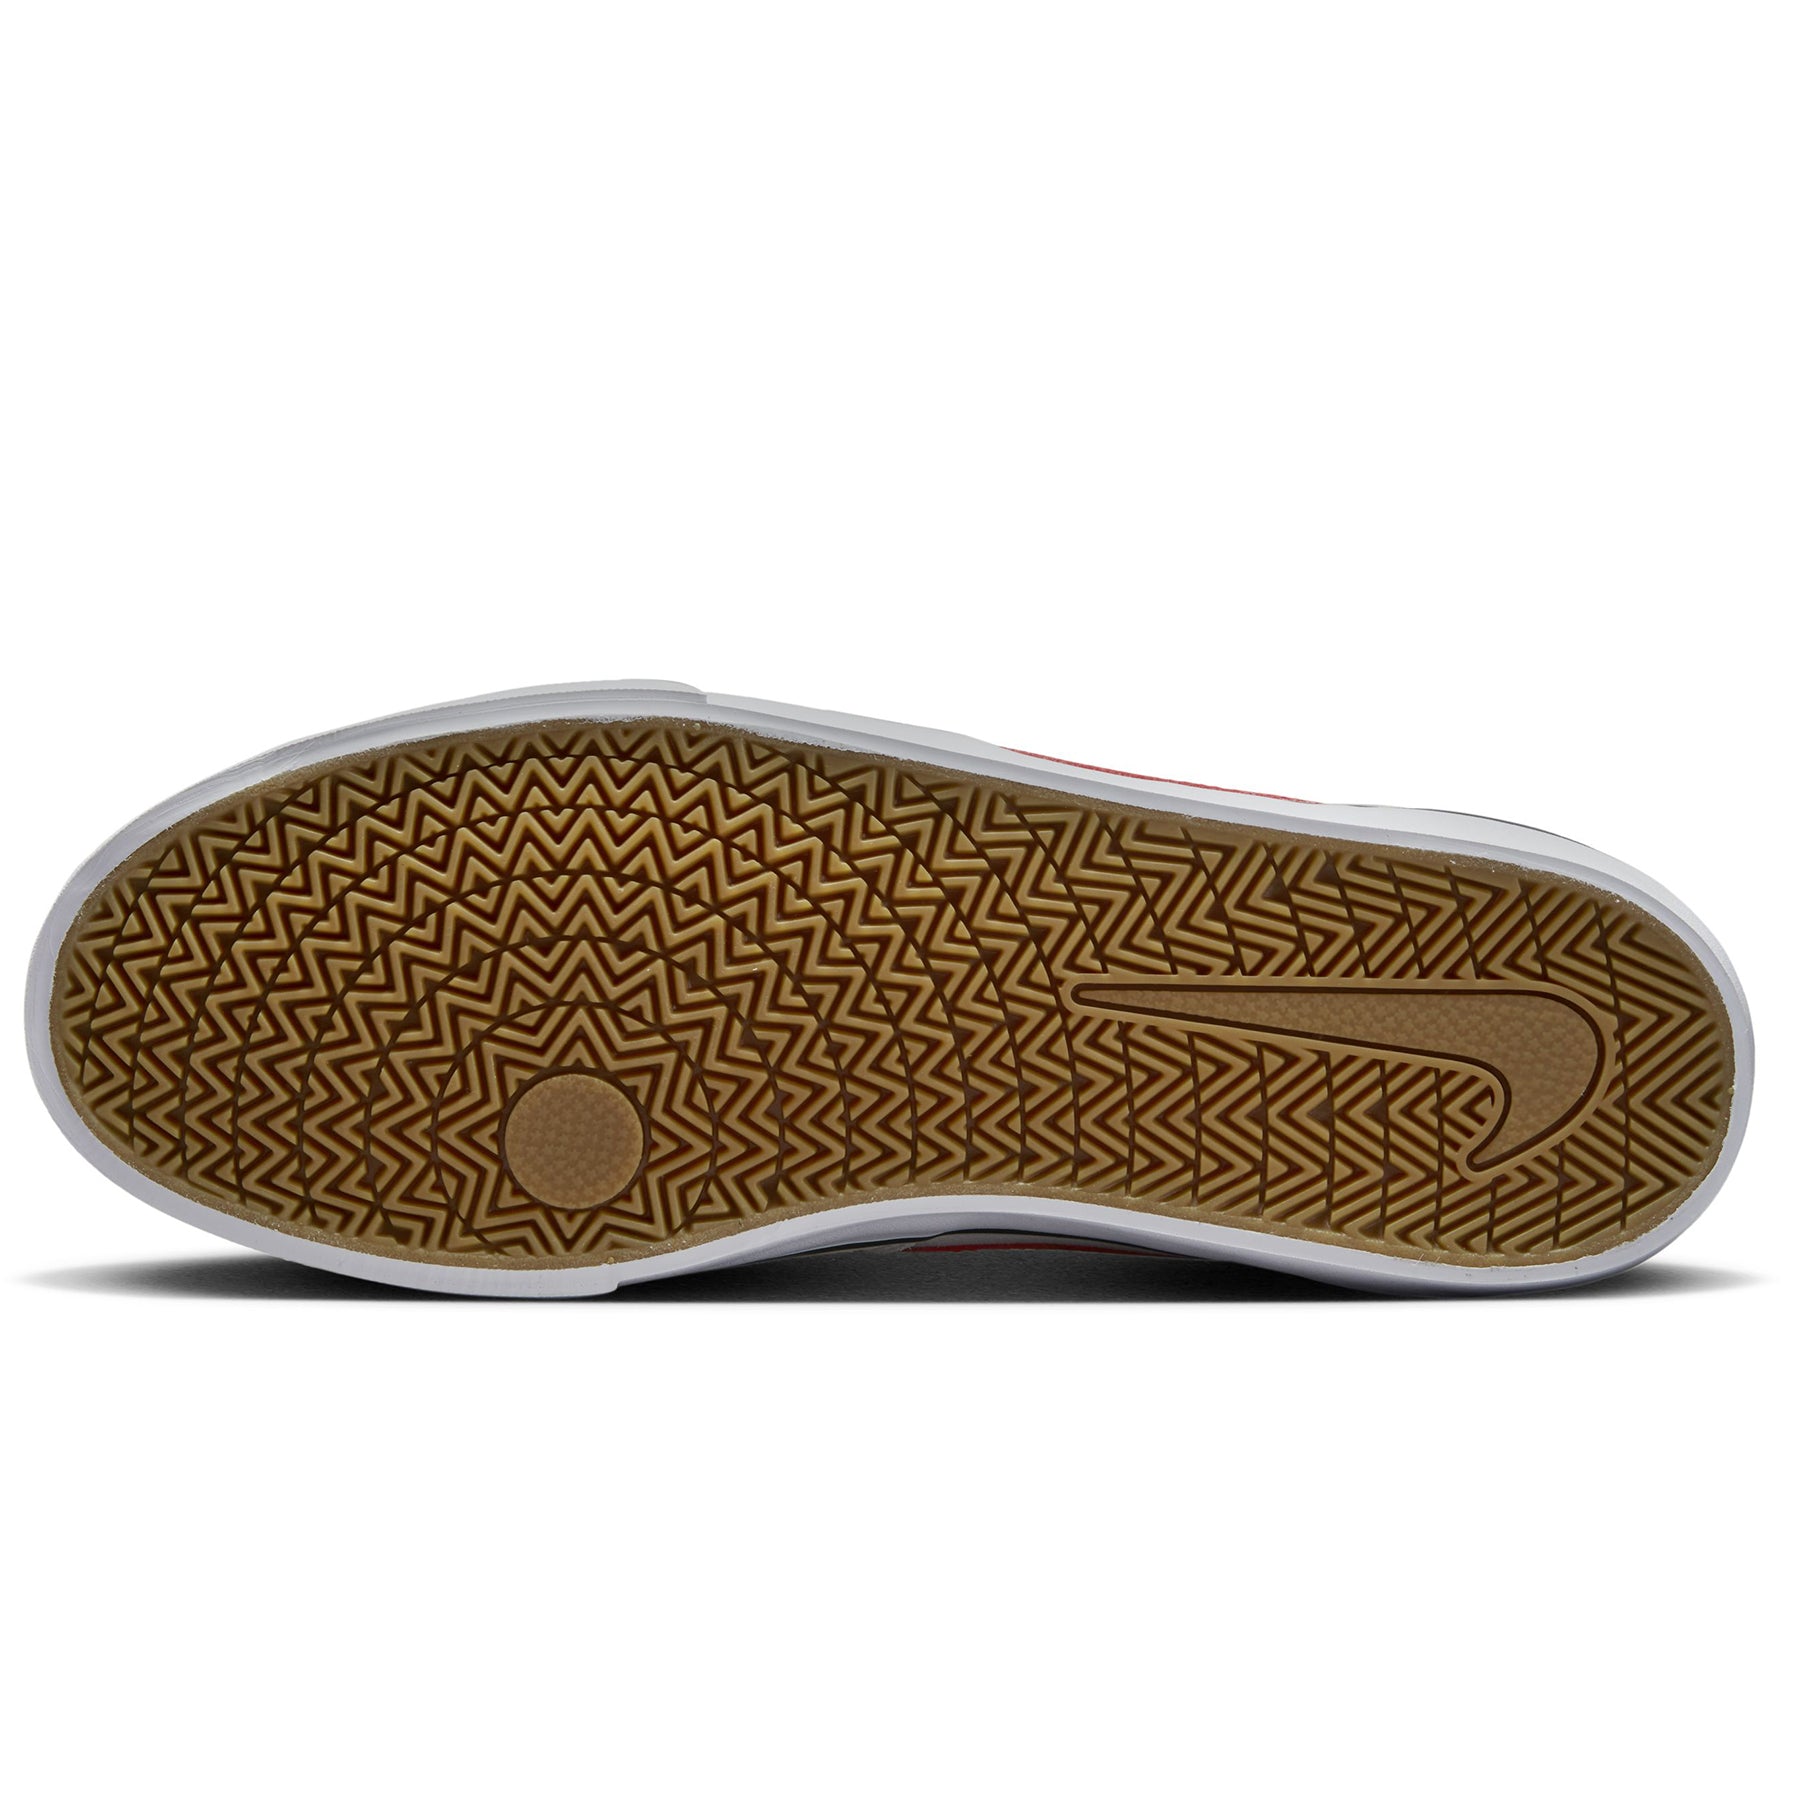 Zapatillas Nike Hombre Urbanas Chron 2 SB | DM3493-101